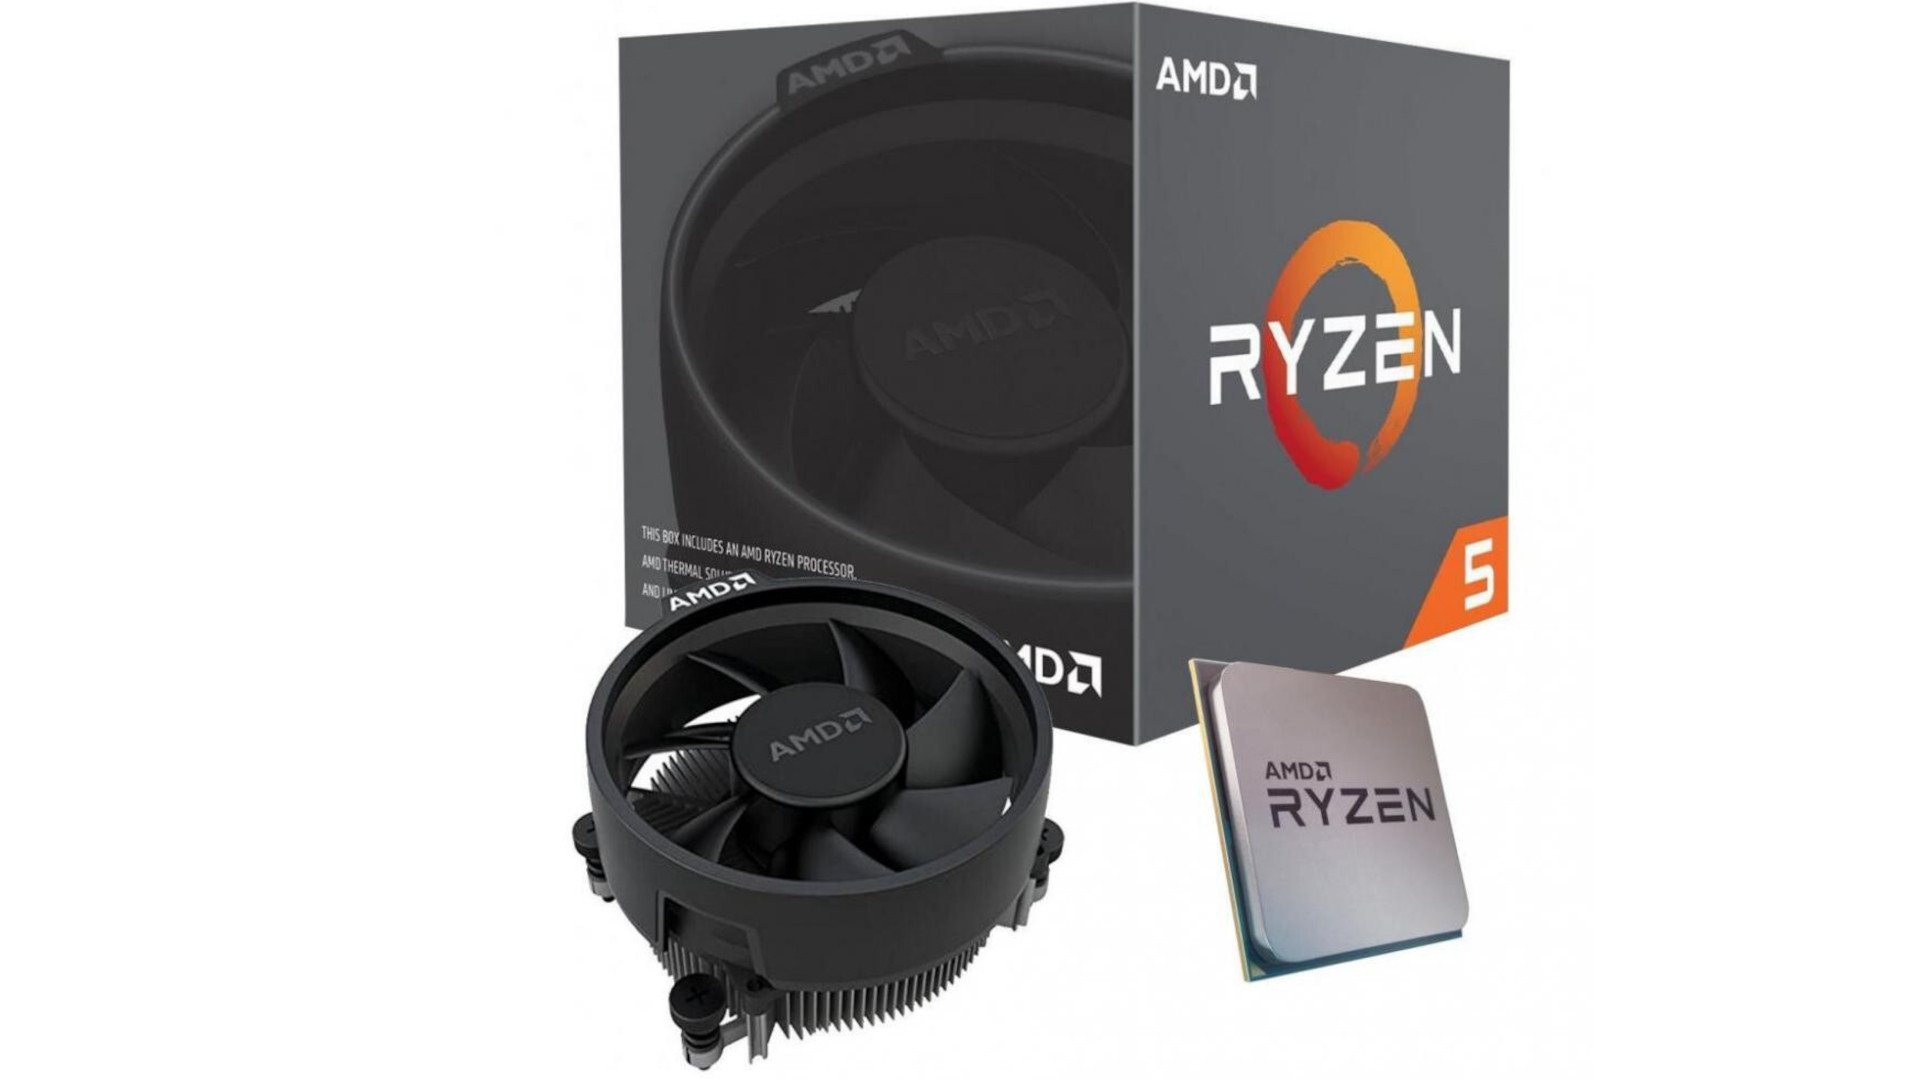 AMD Ryzen 5 3400G 4